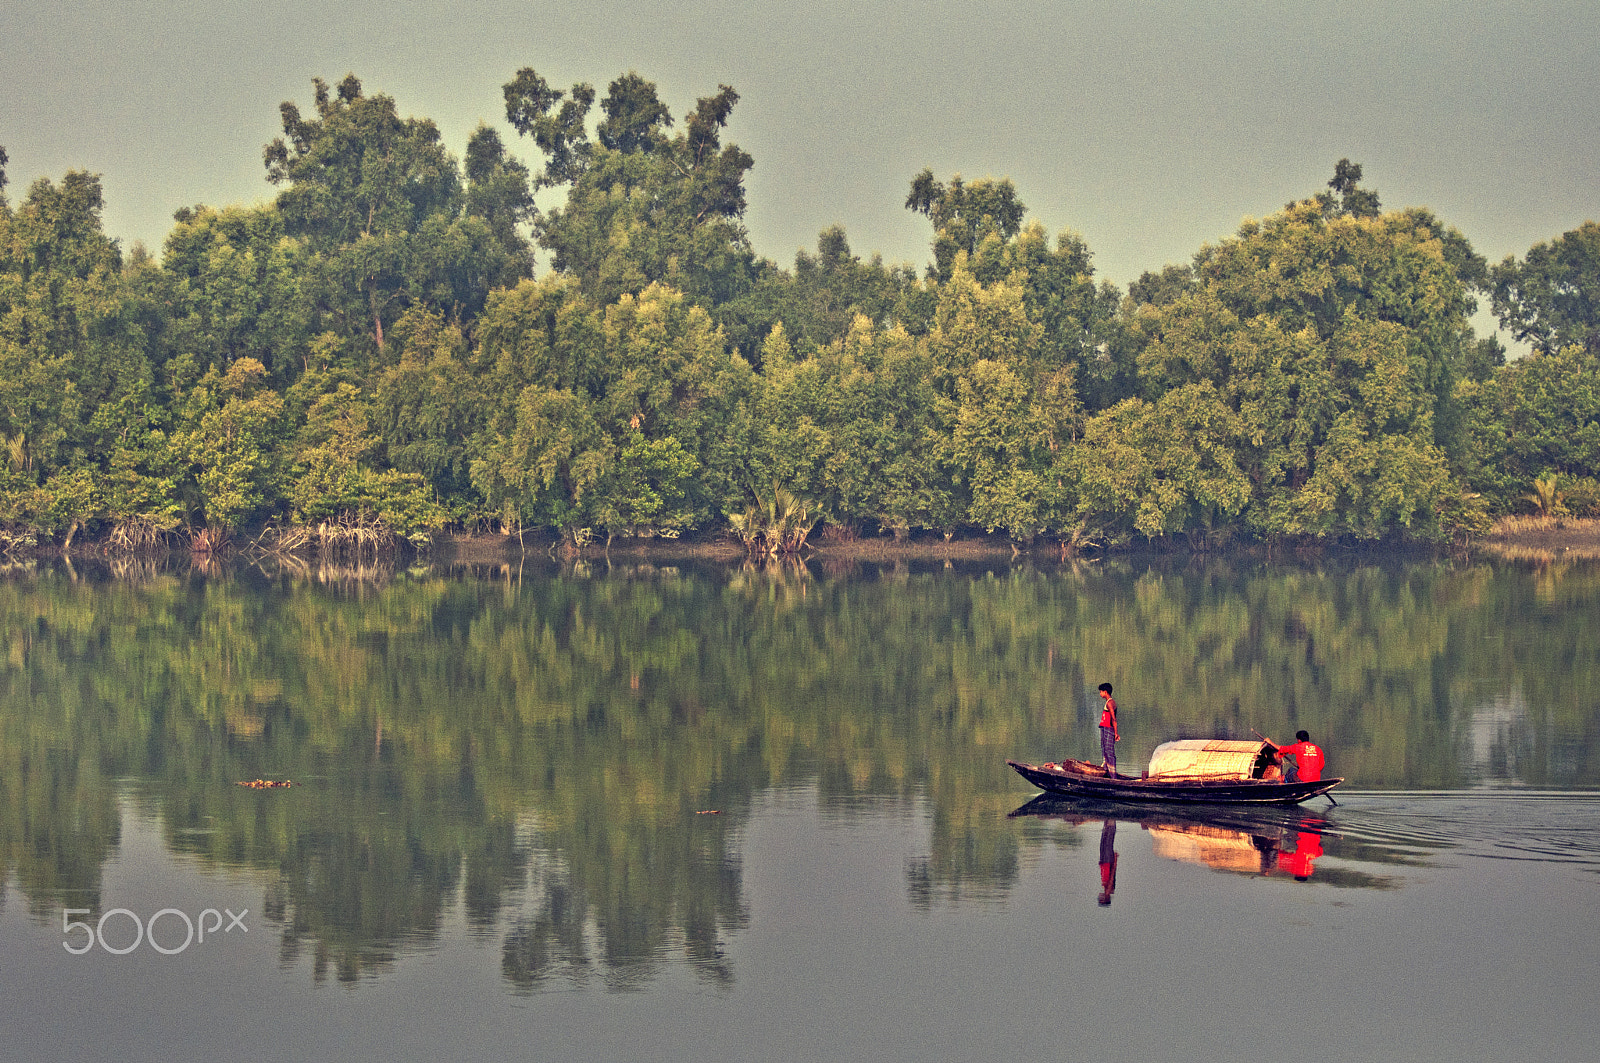 Nikon D90 + Nikon AF-S Nikkor 70-300mm F4.5-5.6G VR sample photo. Sundarban_reflection photography